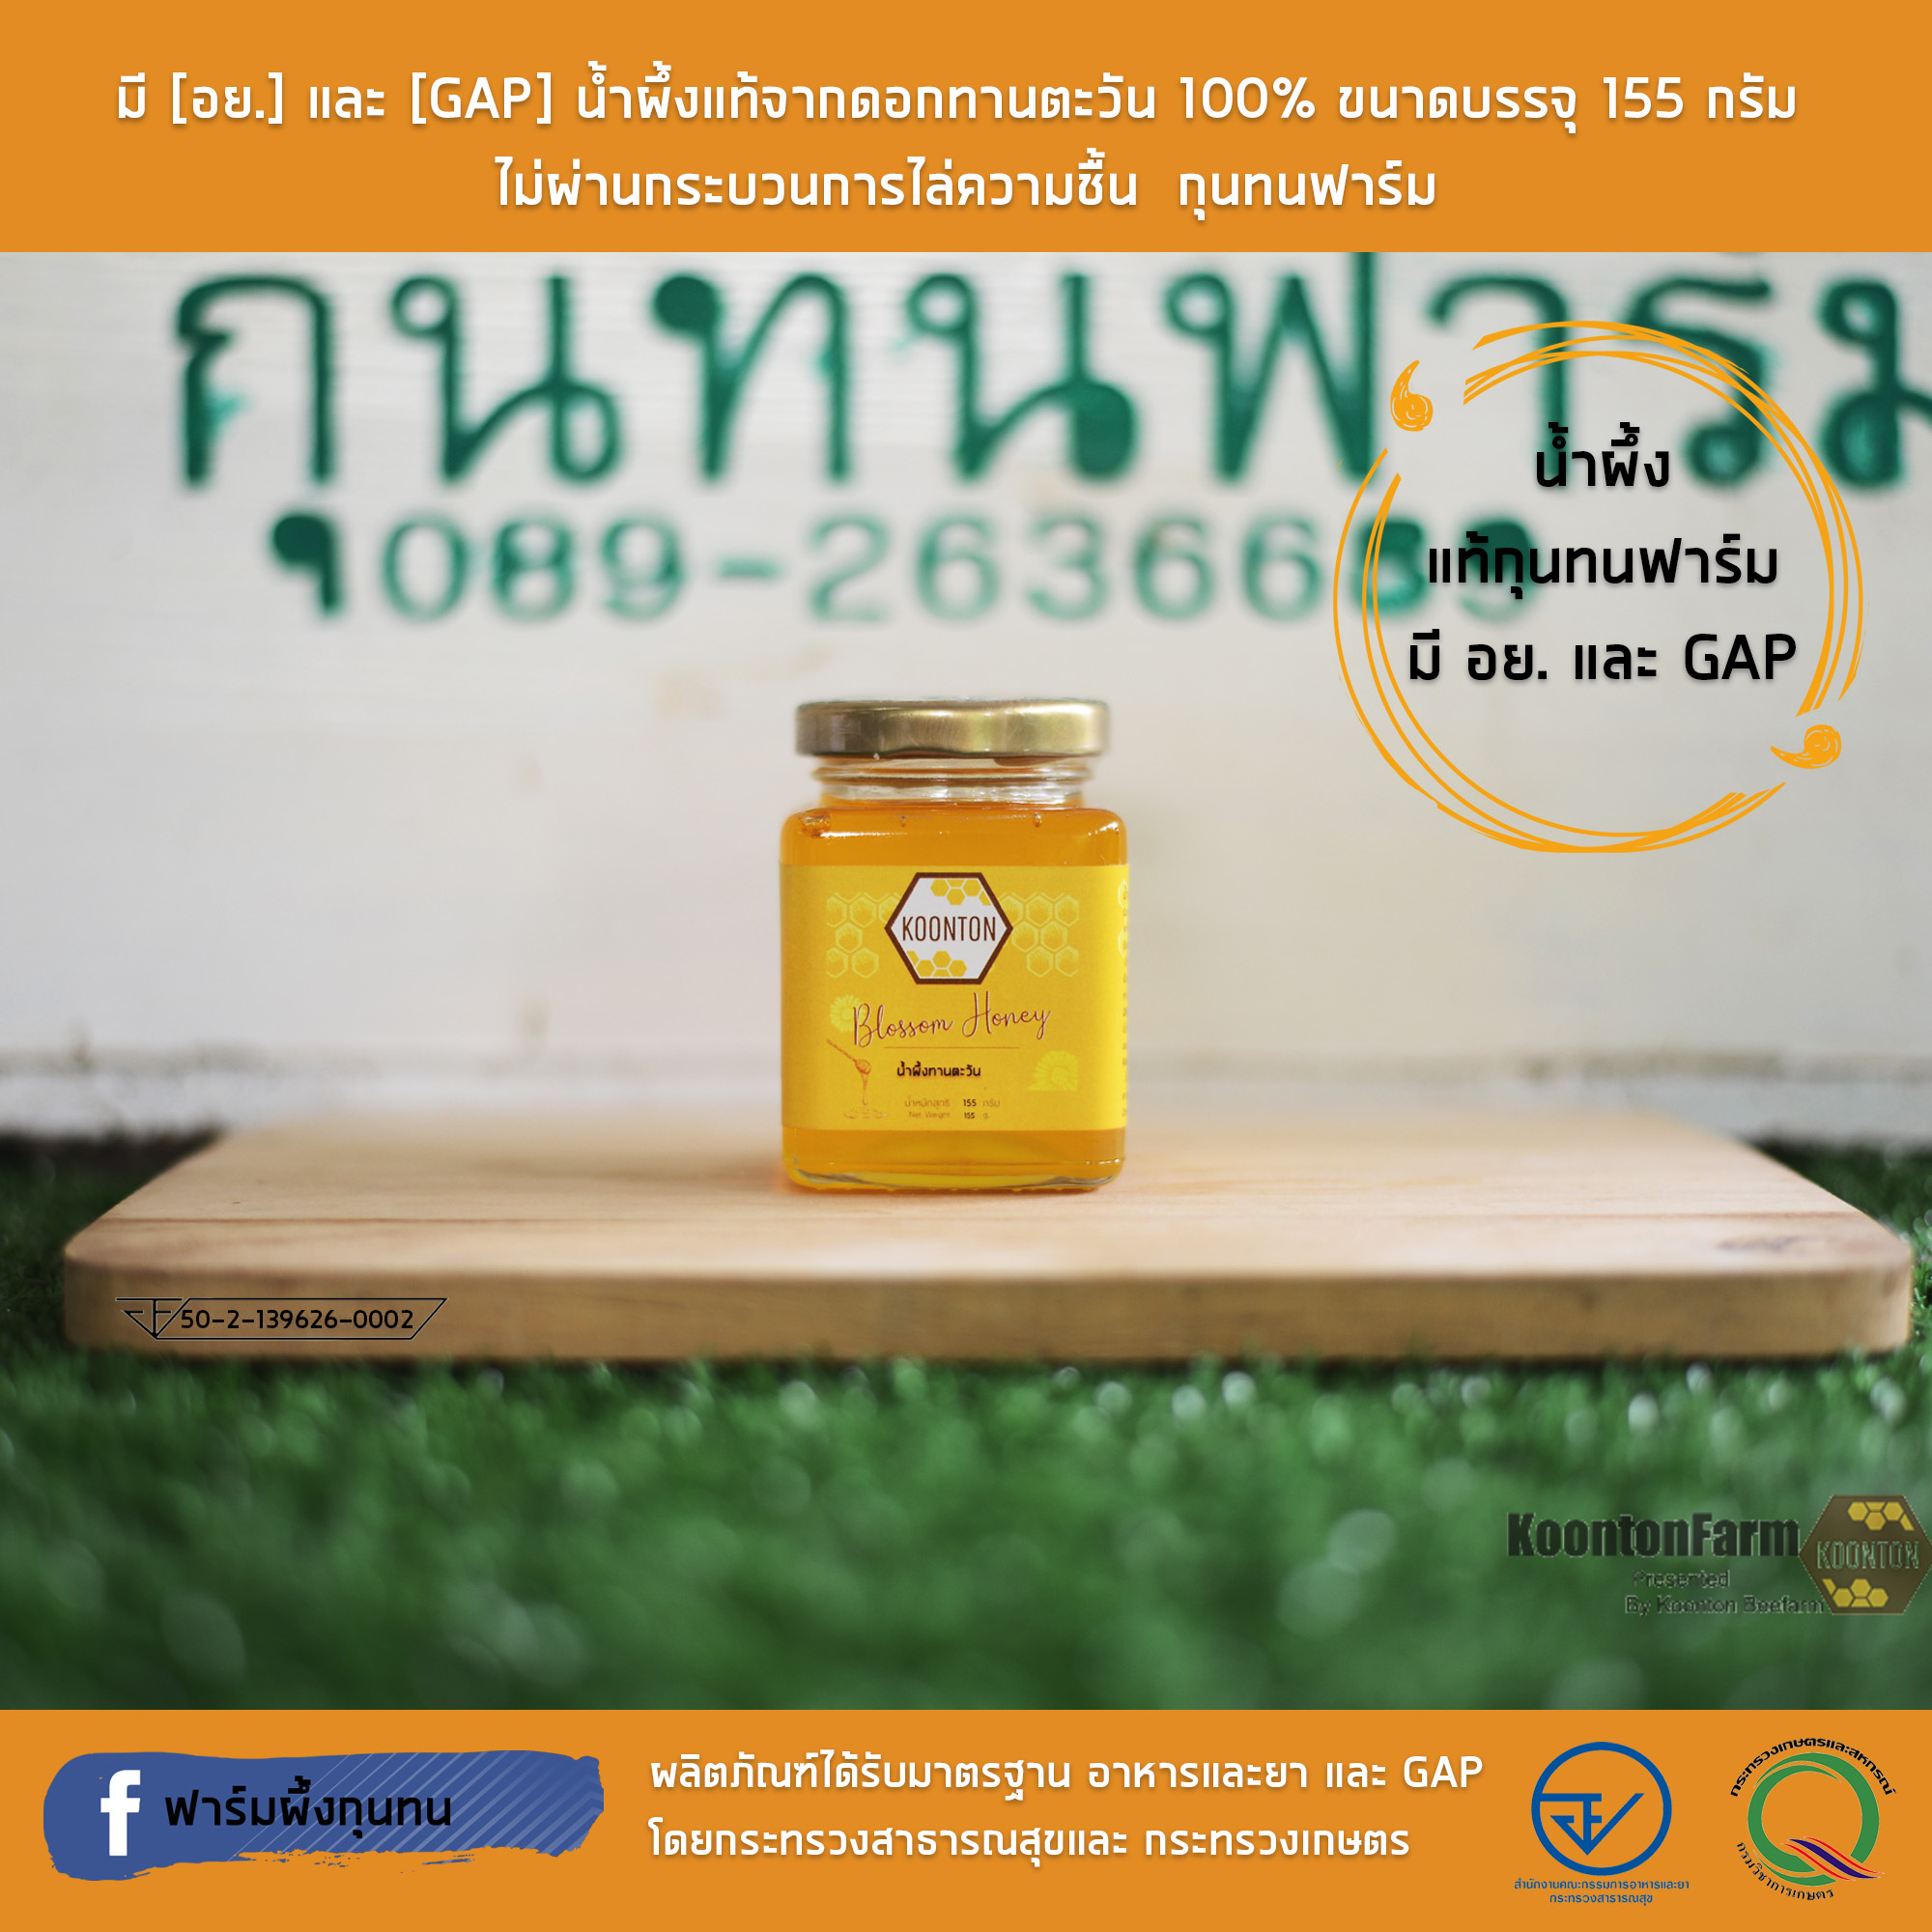 มี [อย.] และ [GAP] น้ำผึ้งแท้จากดอกทานตะวัน 100% ขนาดบรรจุ 155 กรัม  ไม่ผ่านกระบวนการไล่ความชื้น  กุนทนฟาร์ม